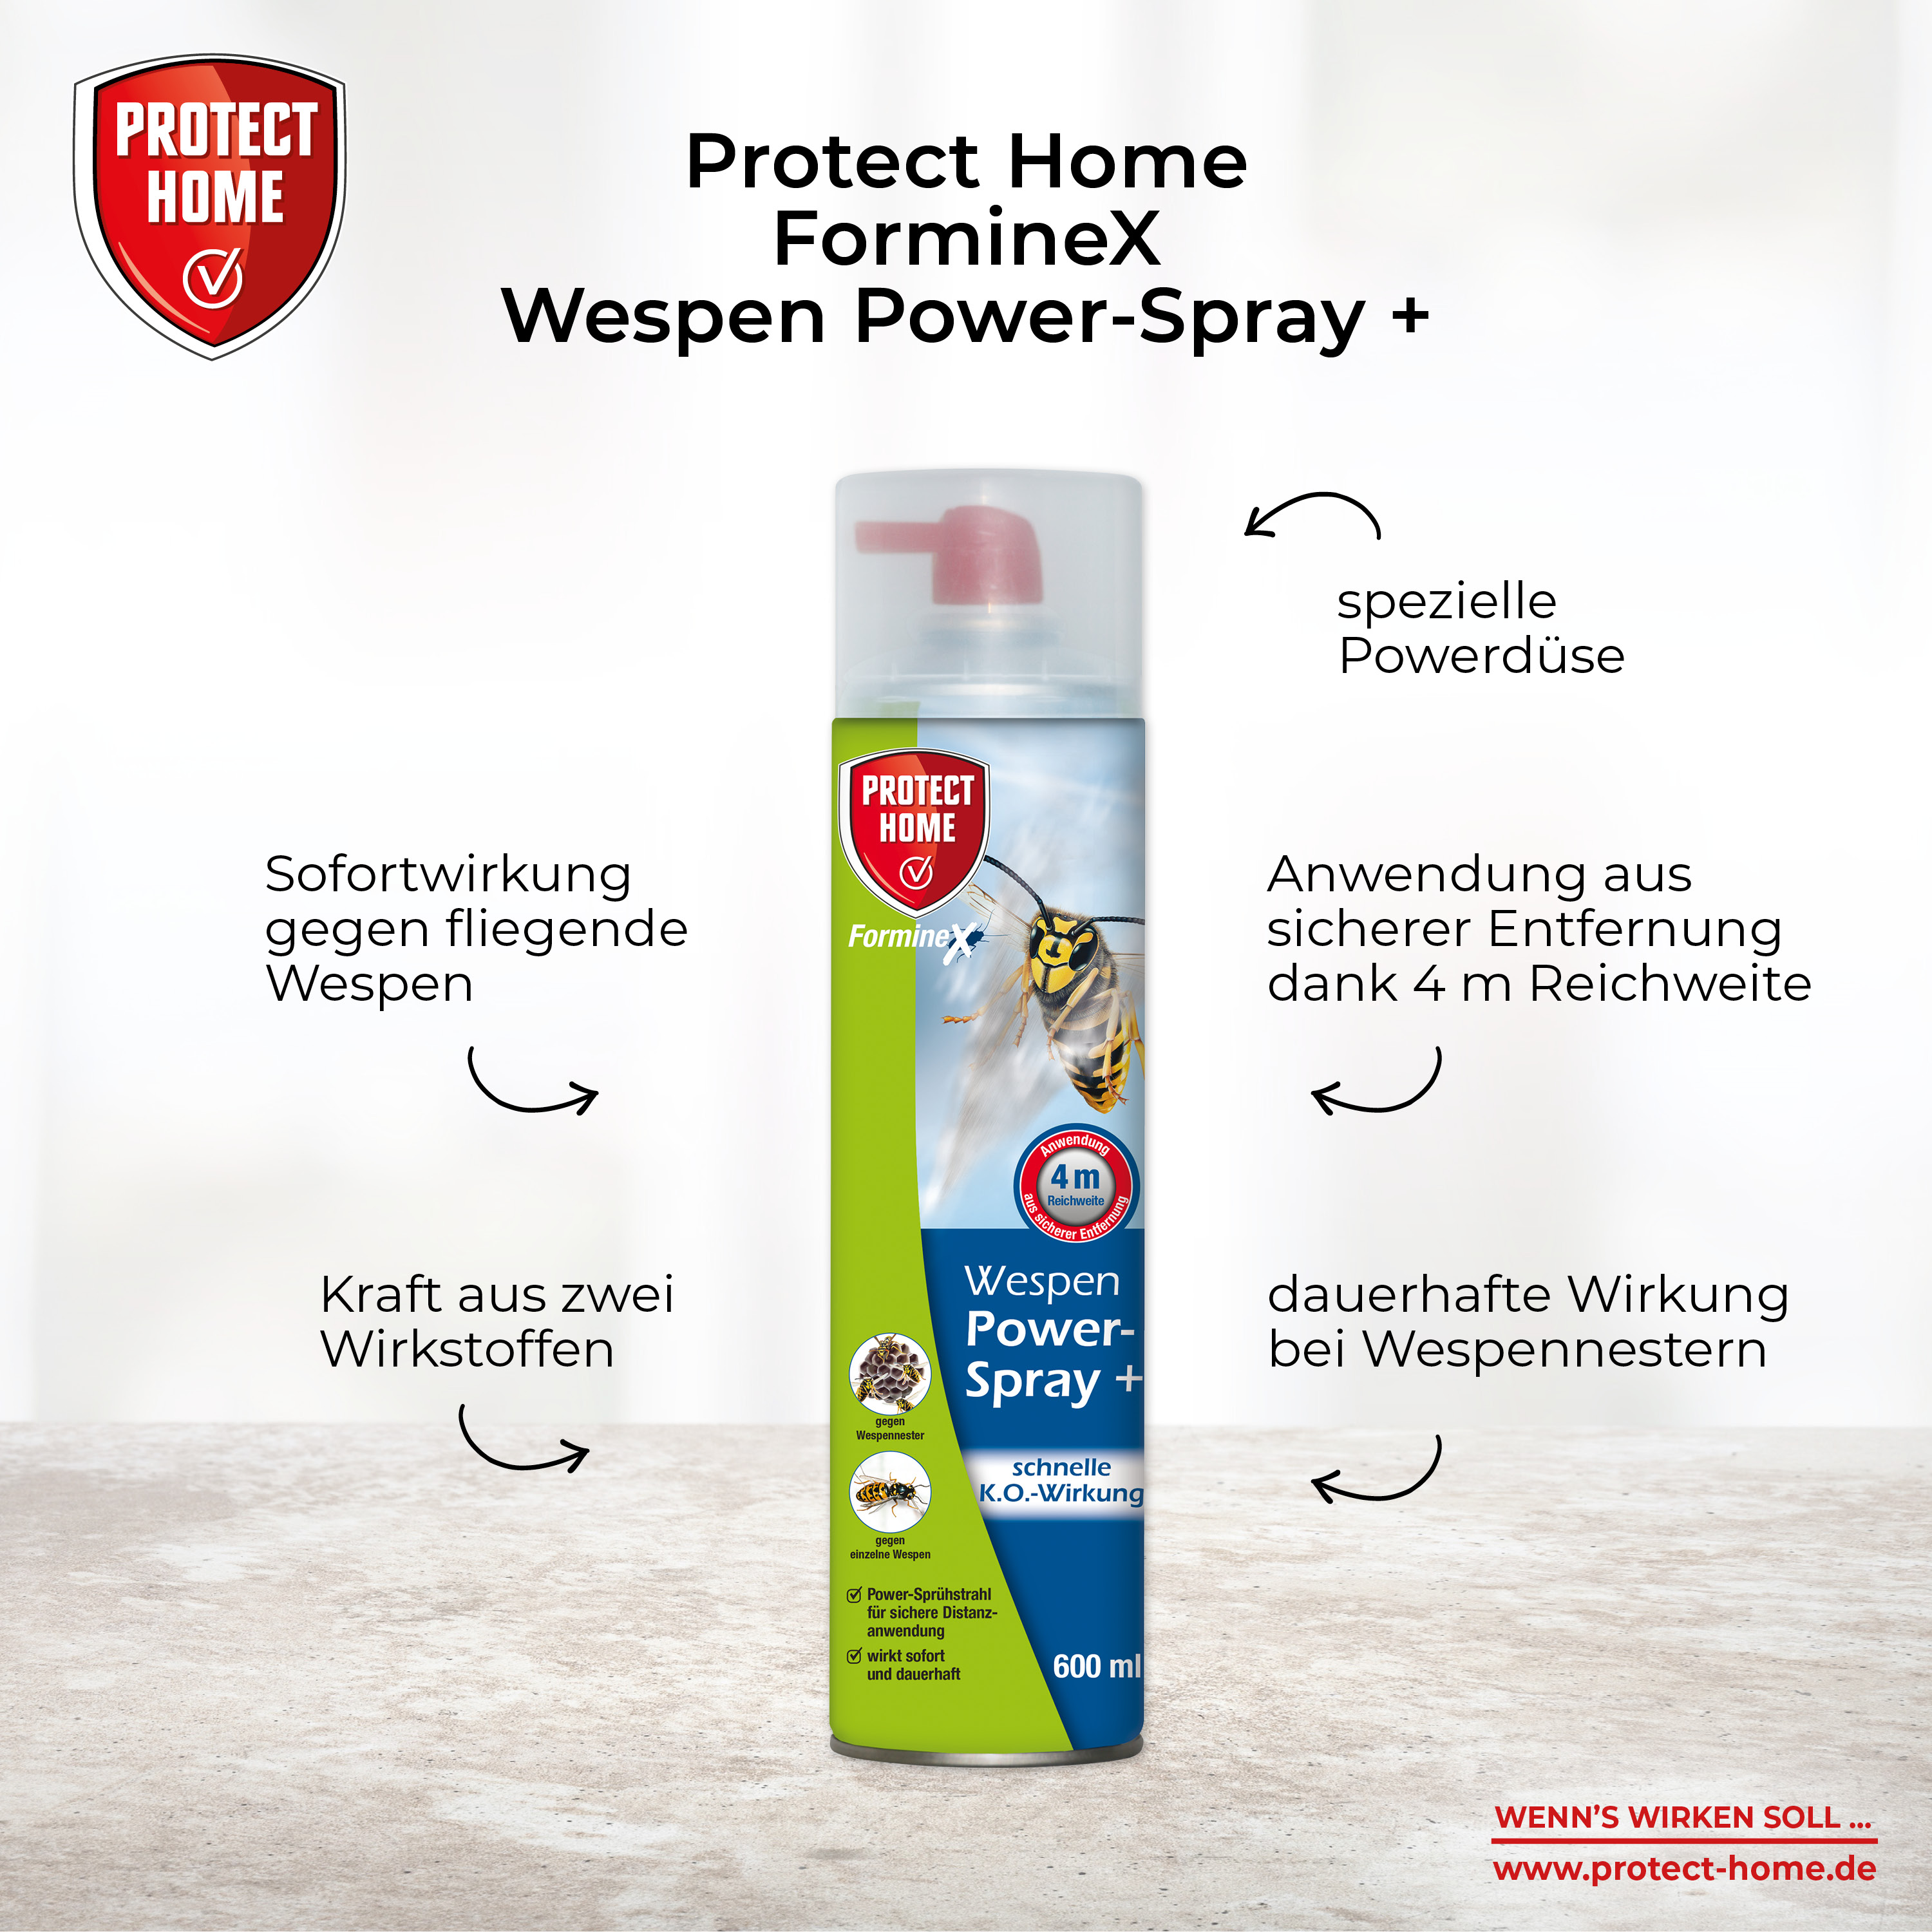 Protect Home FormineX Wespenschaum + 600 ml